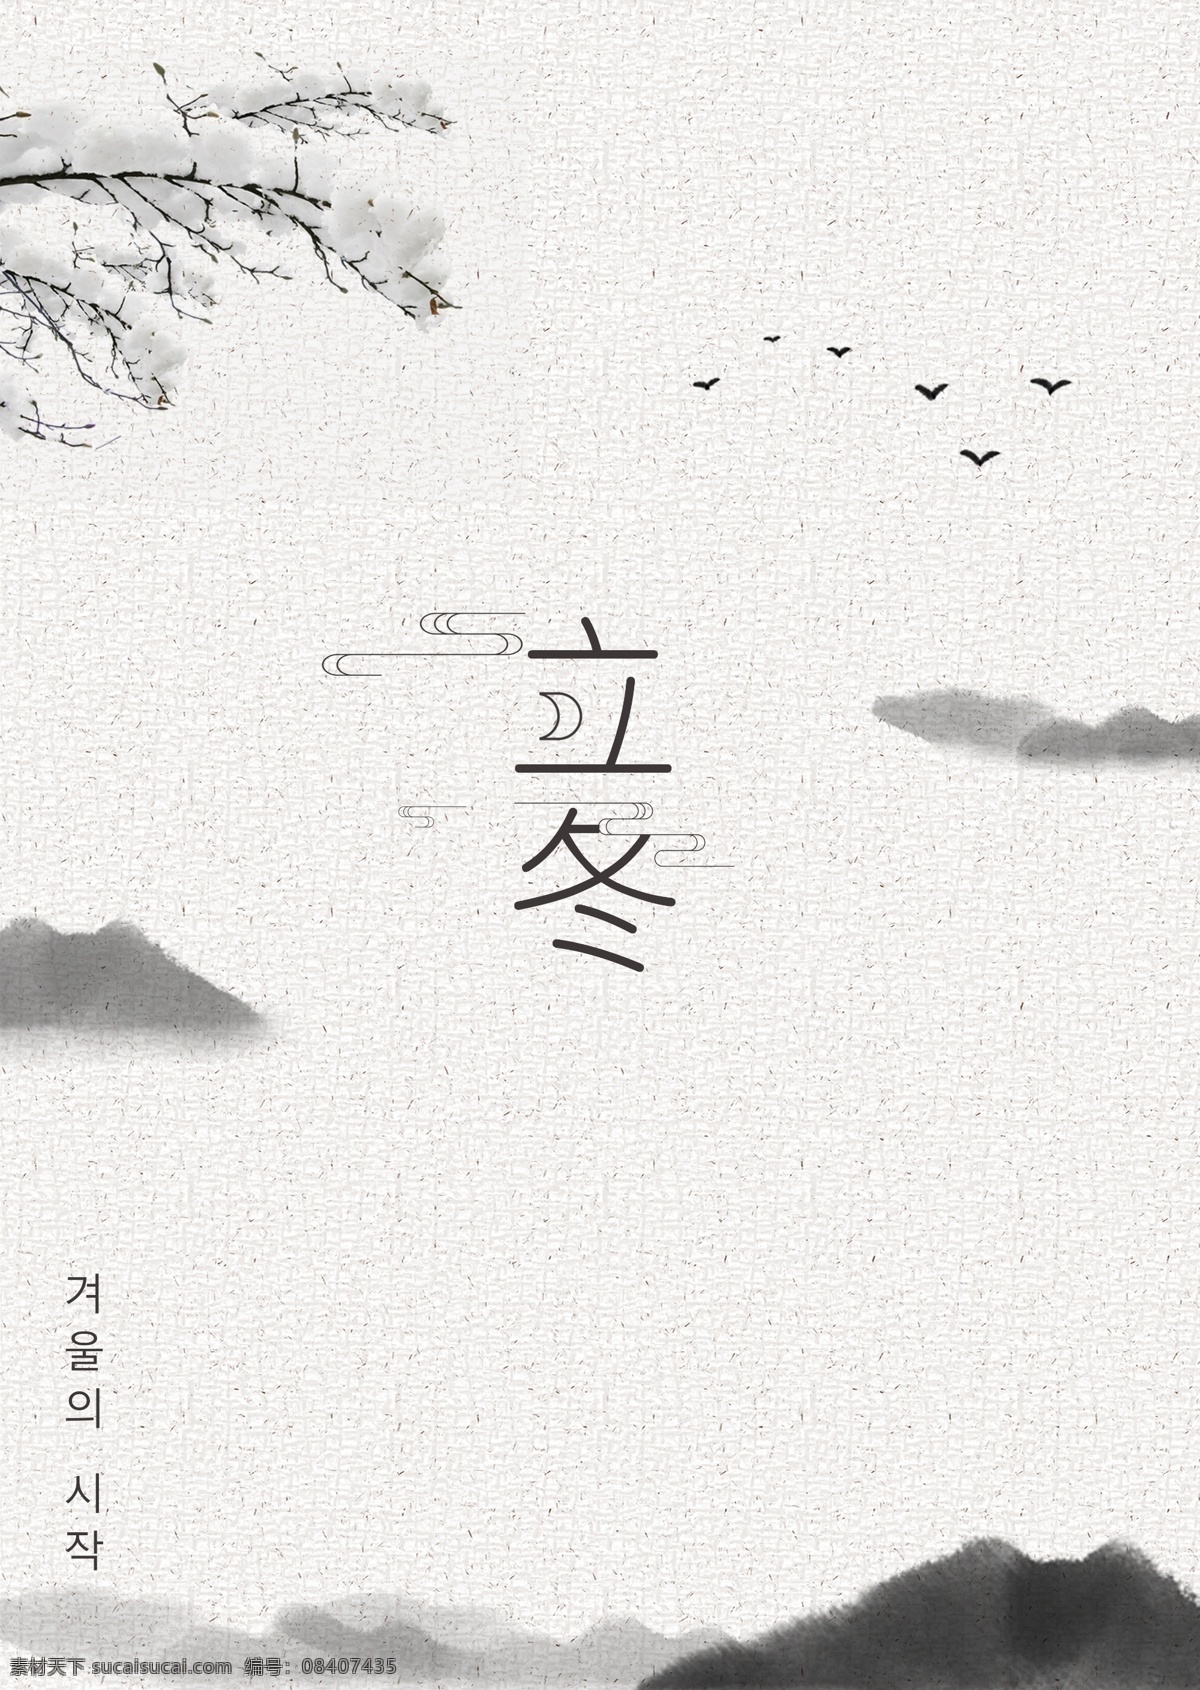 灰色 白色 简单 风景 墨水 冬天 海报 墨 冬季 朝鲜的 中文 英语 分支机构 空白 落下 落叶 鸟类 景观